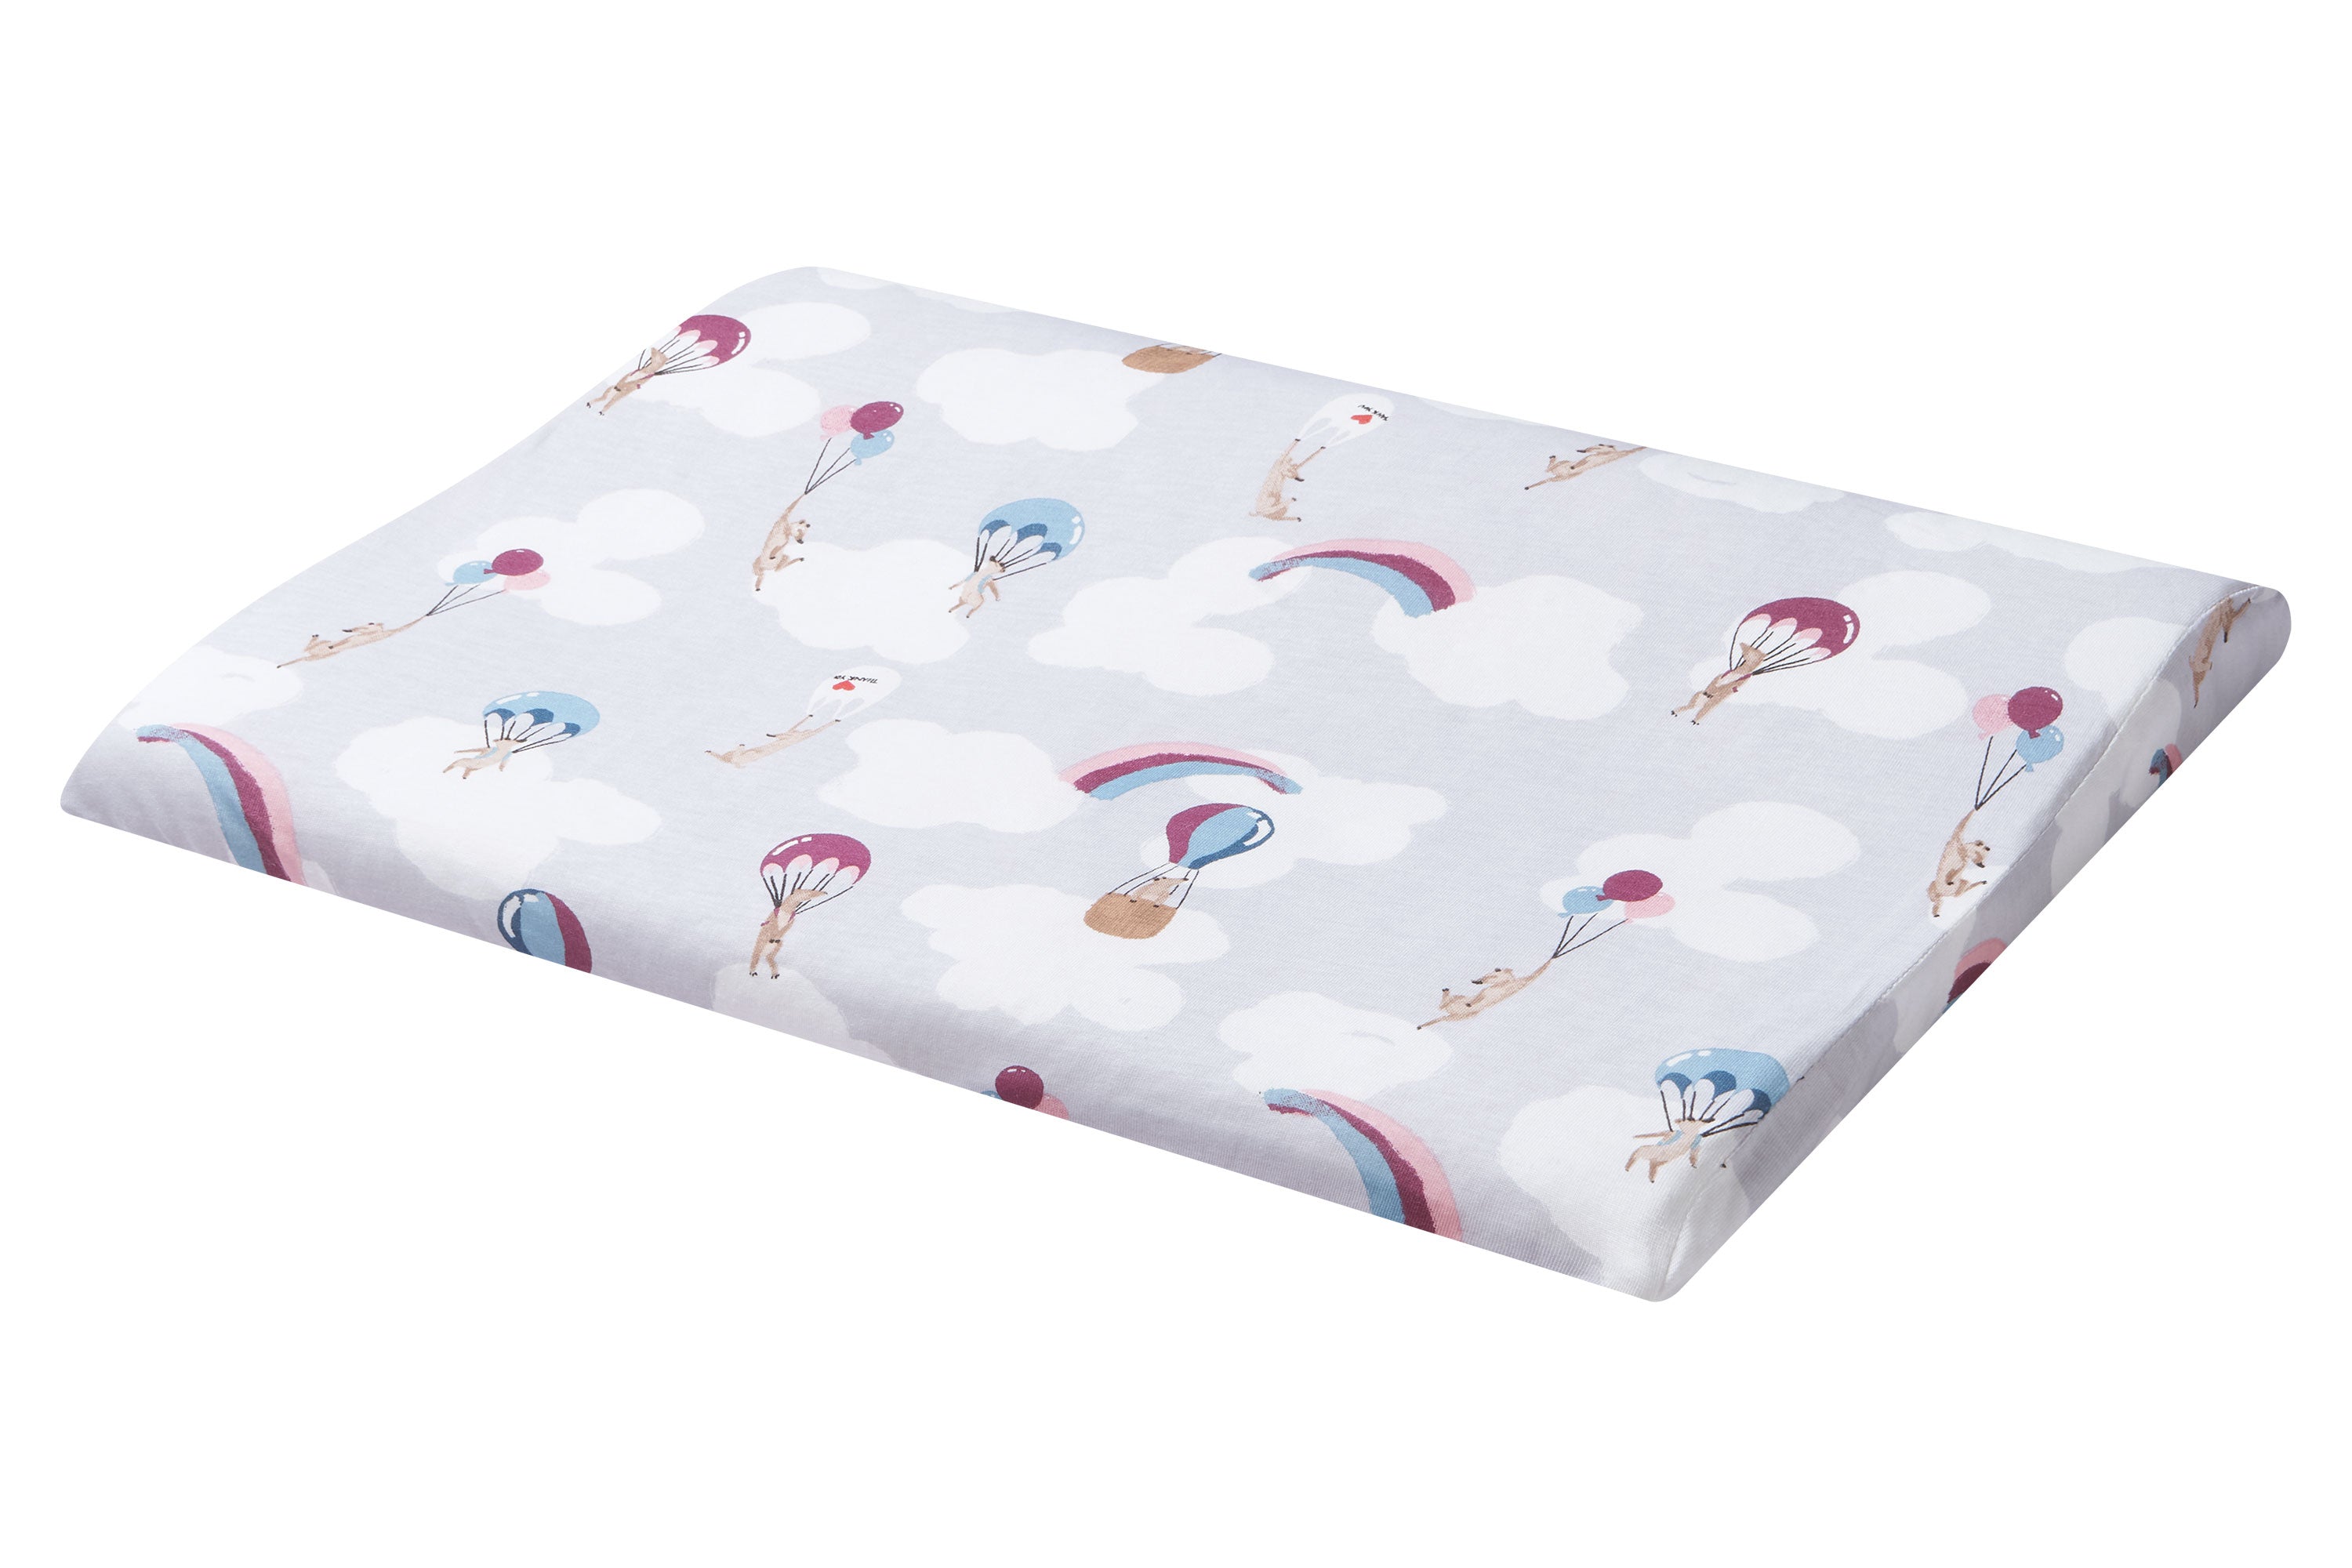 Toddler Pillow and Pillowcase (Bamboo Jersey, Small) - Meerkats Away!